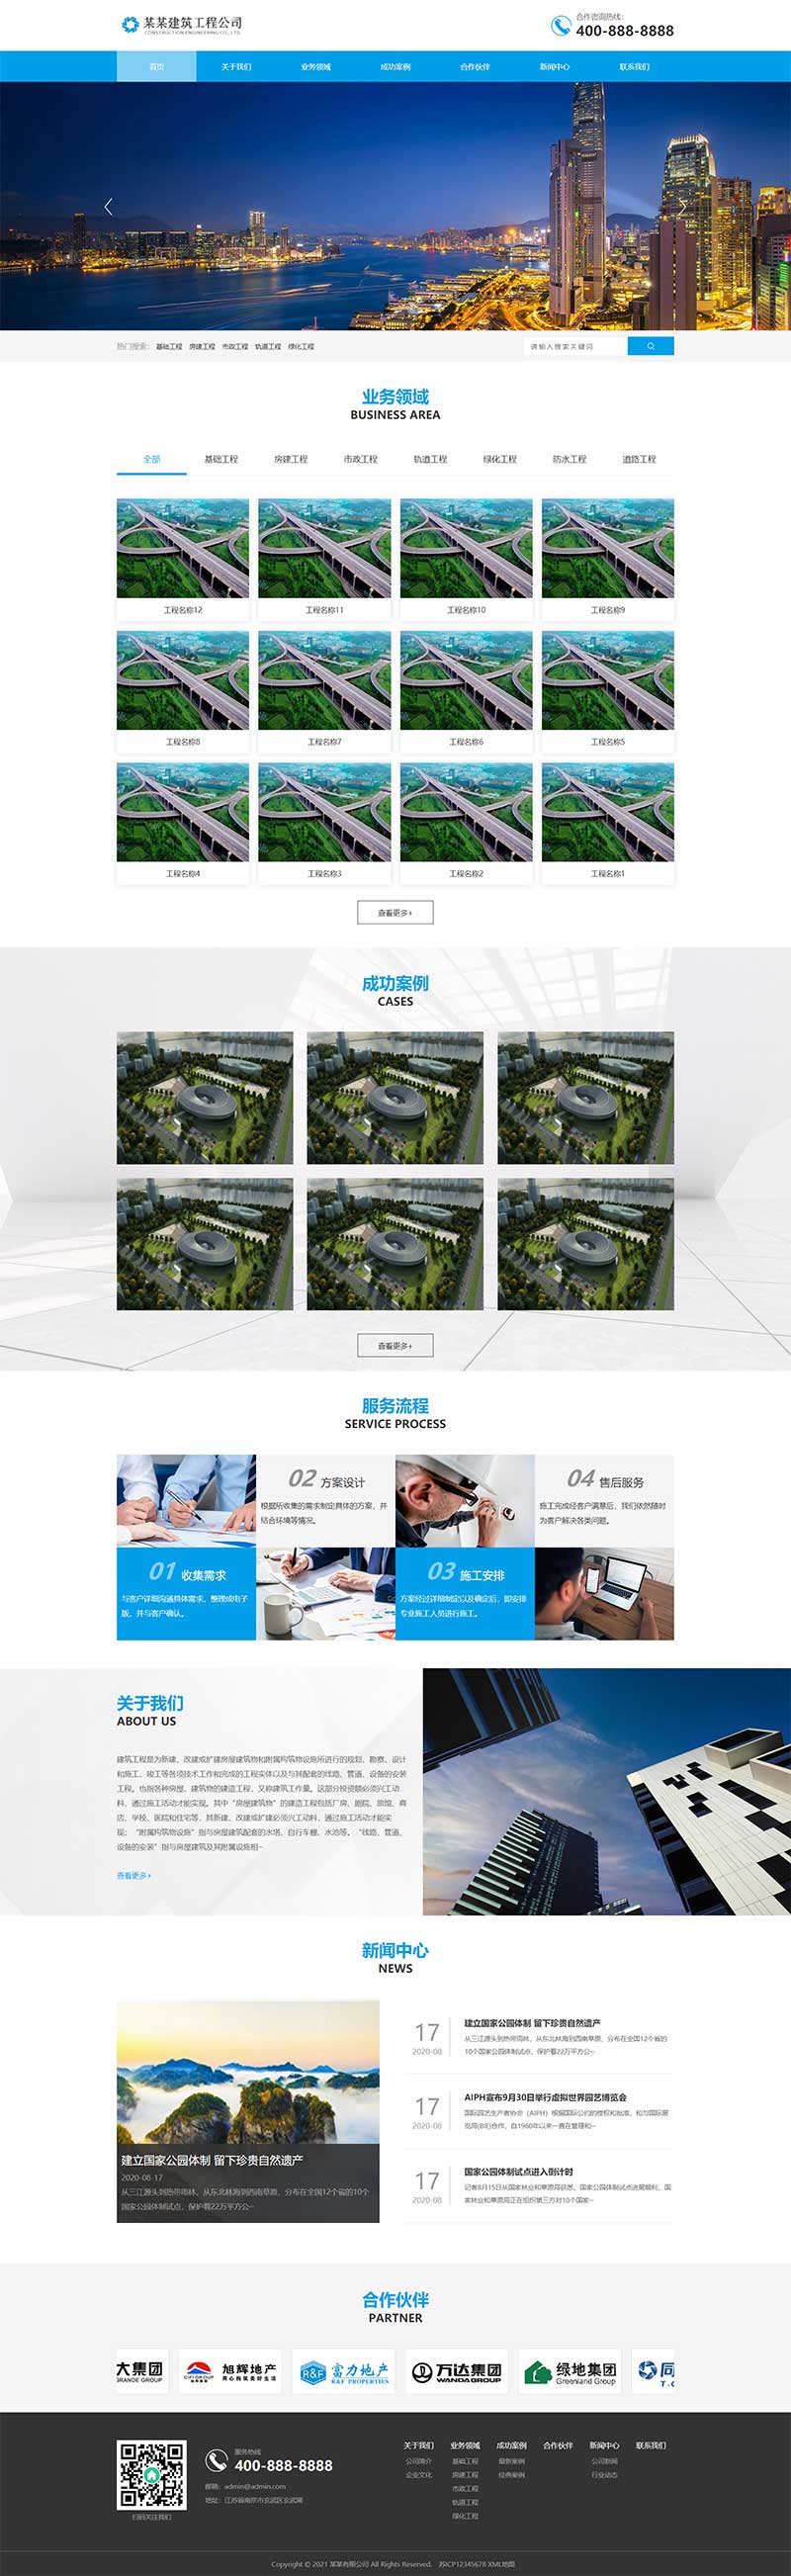 (PC+手机版)蓝色大气建筑工程建筑设计土建网站源码电脑端展示图片